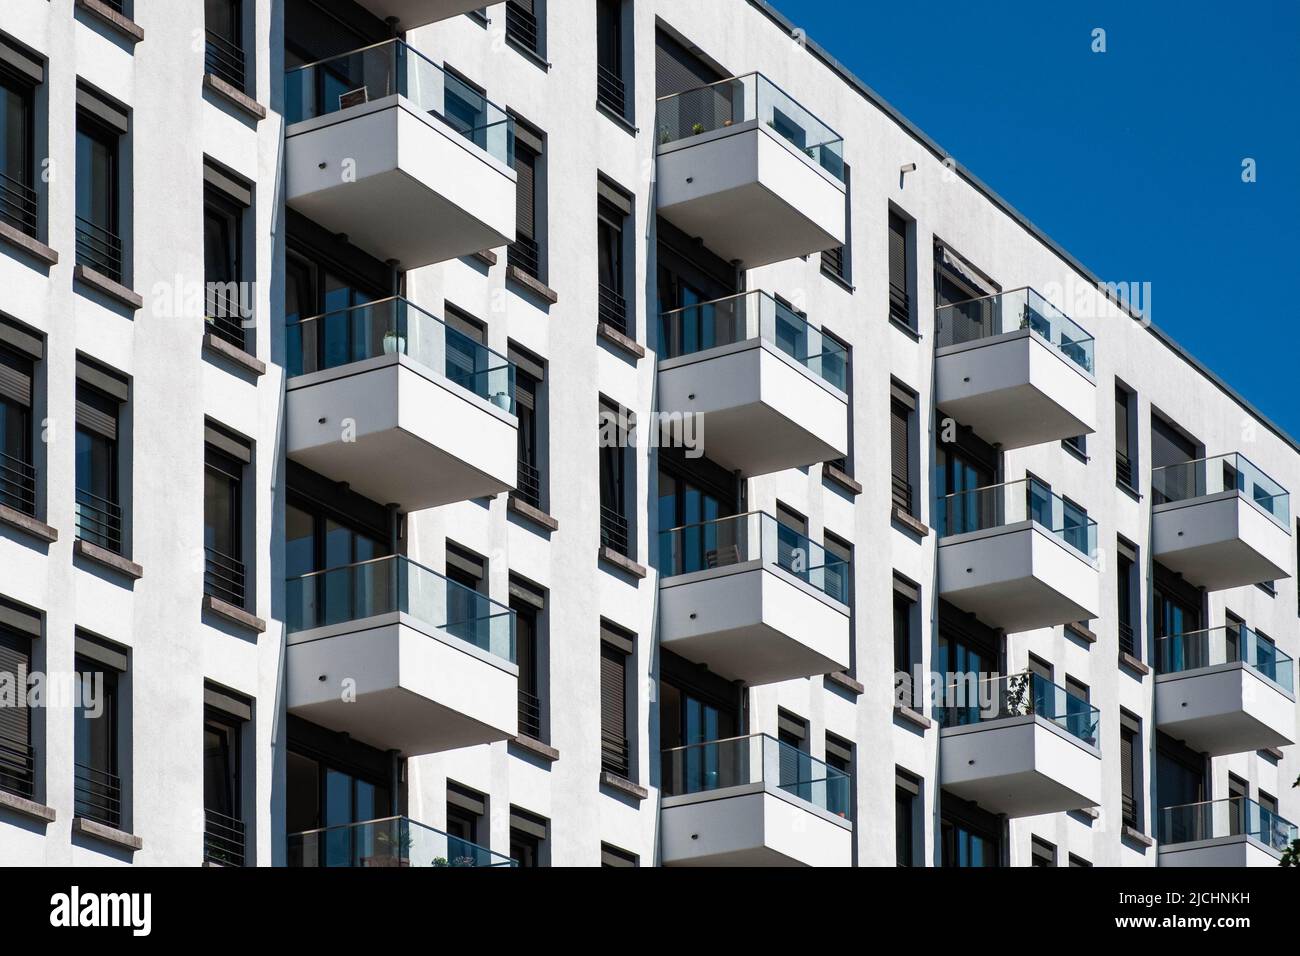 balcons sur la façade de l'immeuble d'appartements, immobilier résidentiel Banque D'Images